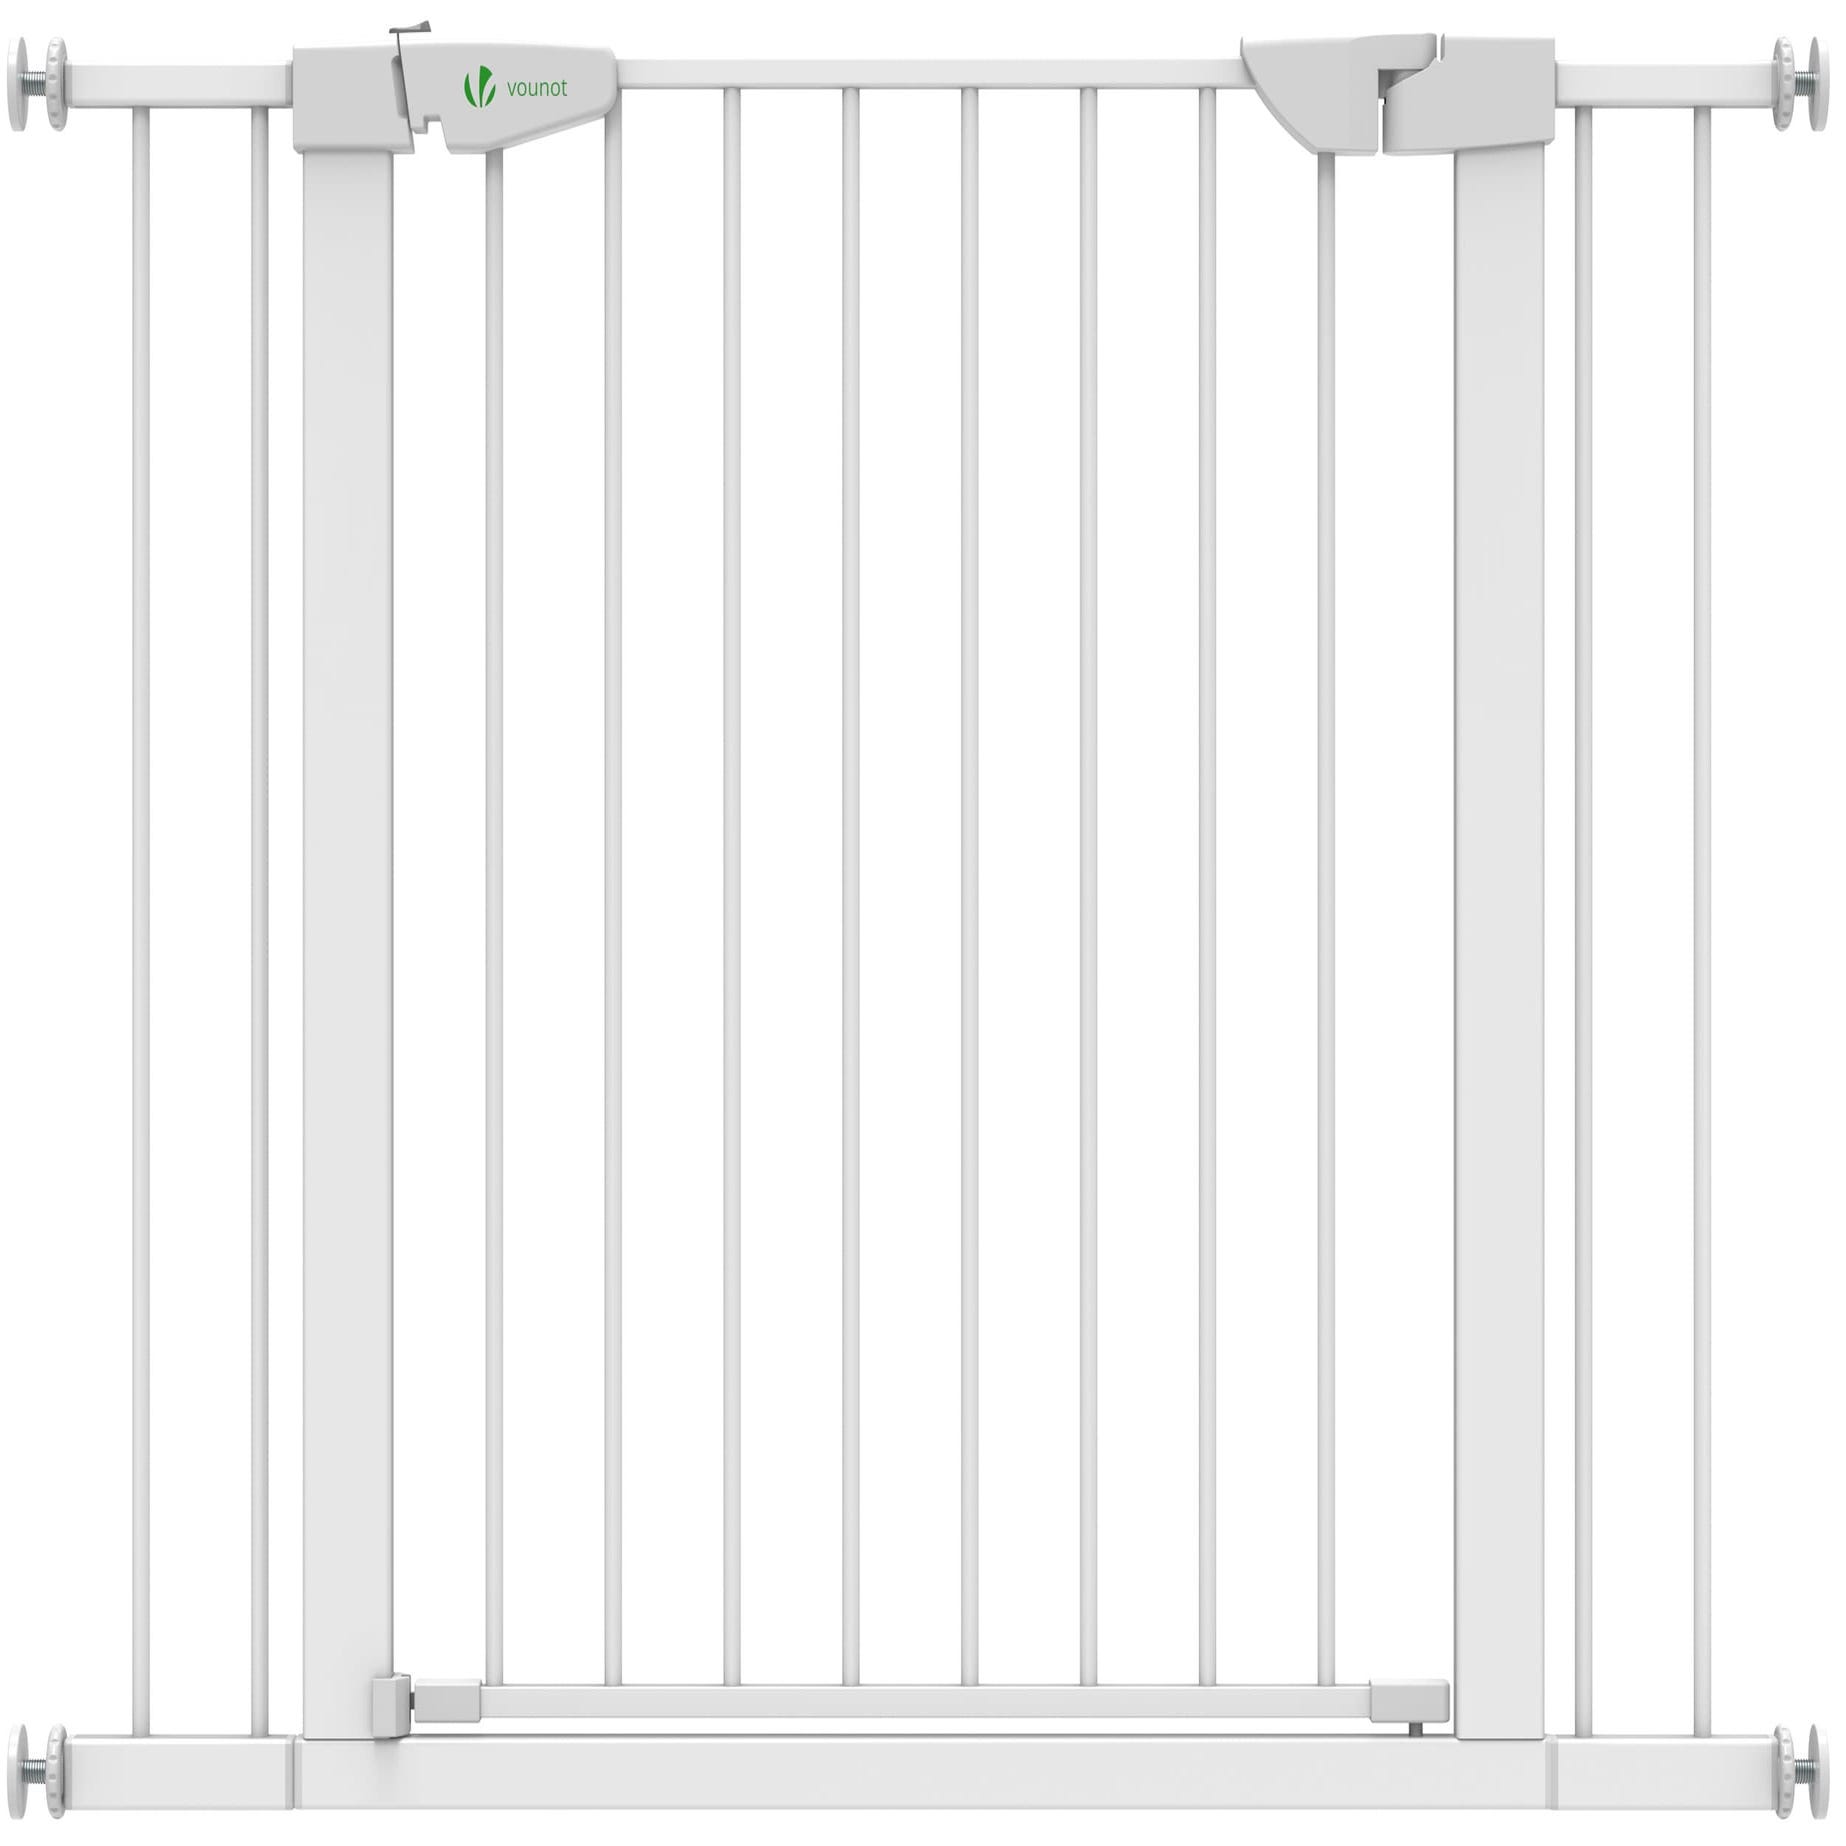 Barriere de Securite porte et escalier 100-108cm blanc pour animaux